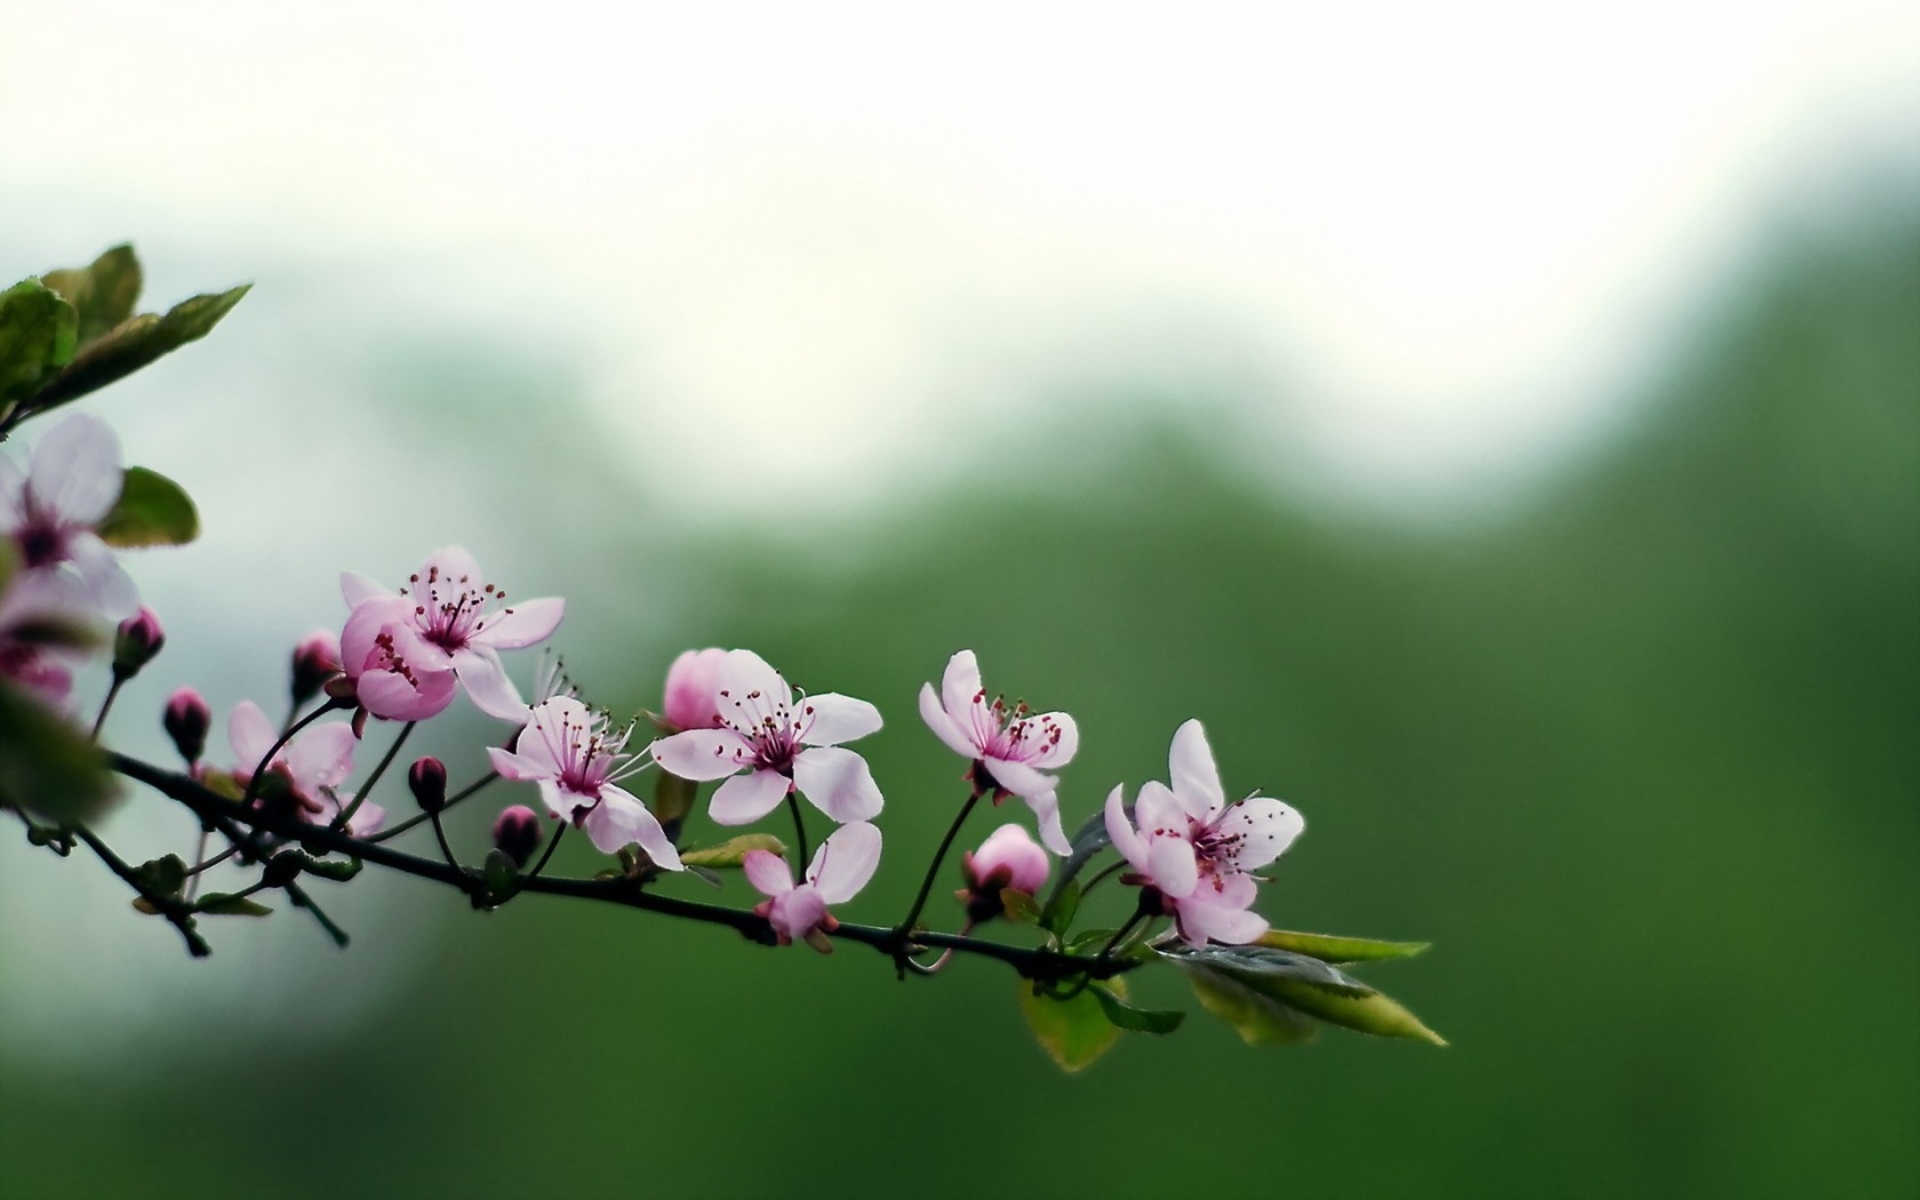 Hoa đào: Vẻ đẹp trân quý và có giá trị văn hóa rất cao của hoa đào đang chờ đón bạn. Những đường cong tinh tế và màu sắc rực rỡ của hoa đào chắc chắn sẽ làm say đắm trái tim bạn.